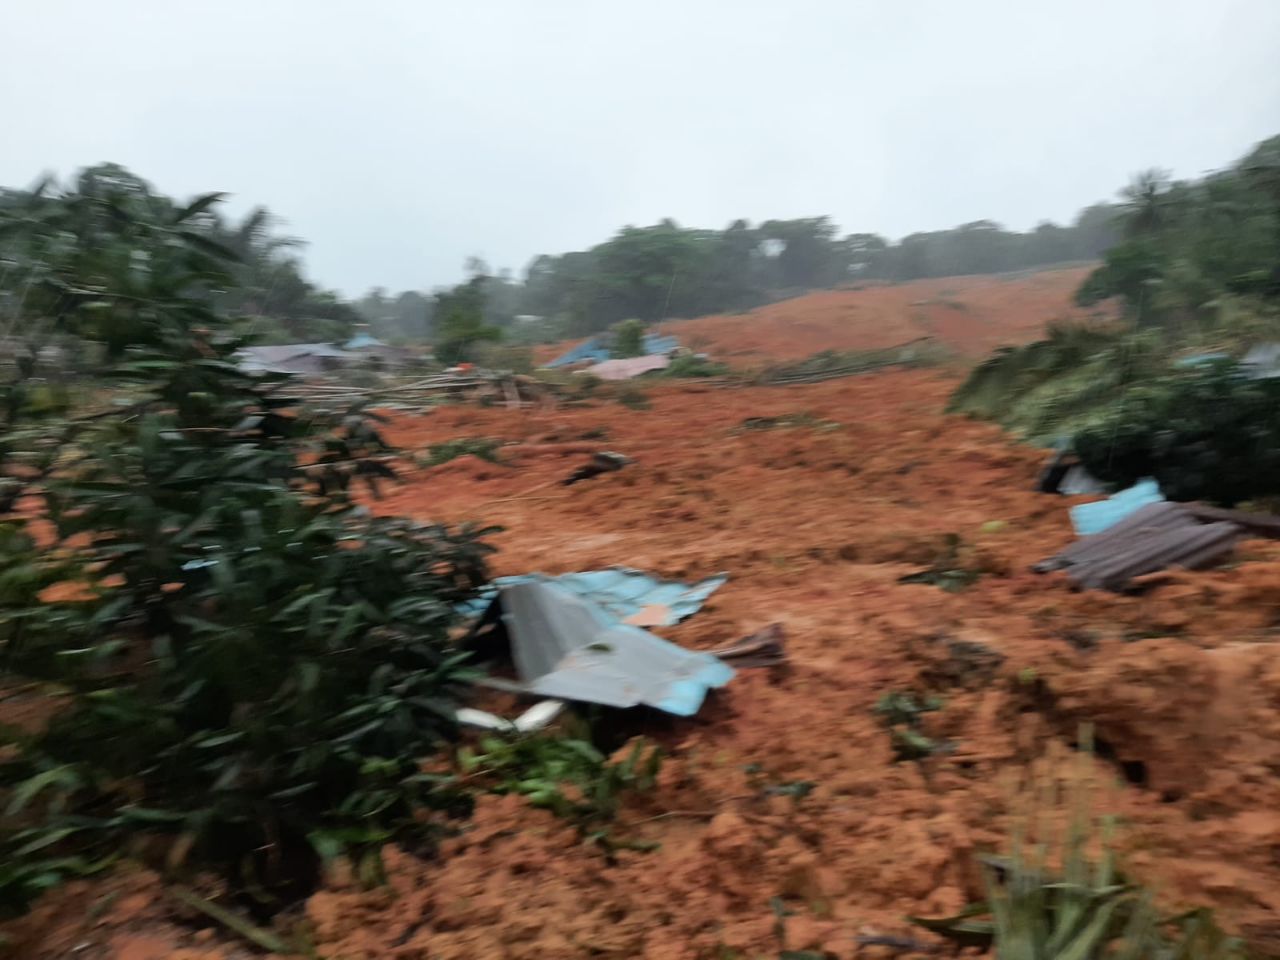 Banjir Bandang di Serasan Natuna, 6 Jam Menuju Lokasi dan Sinyal Minim